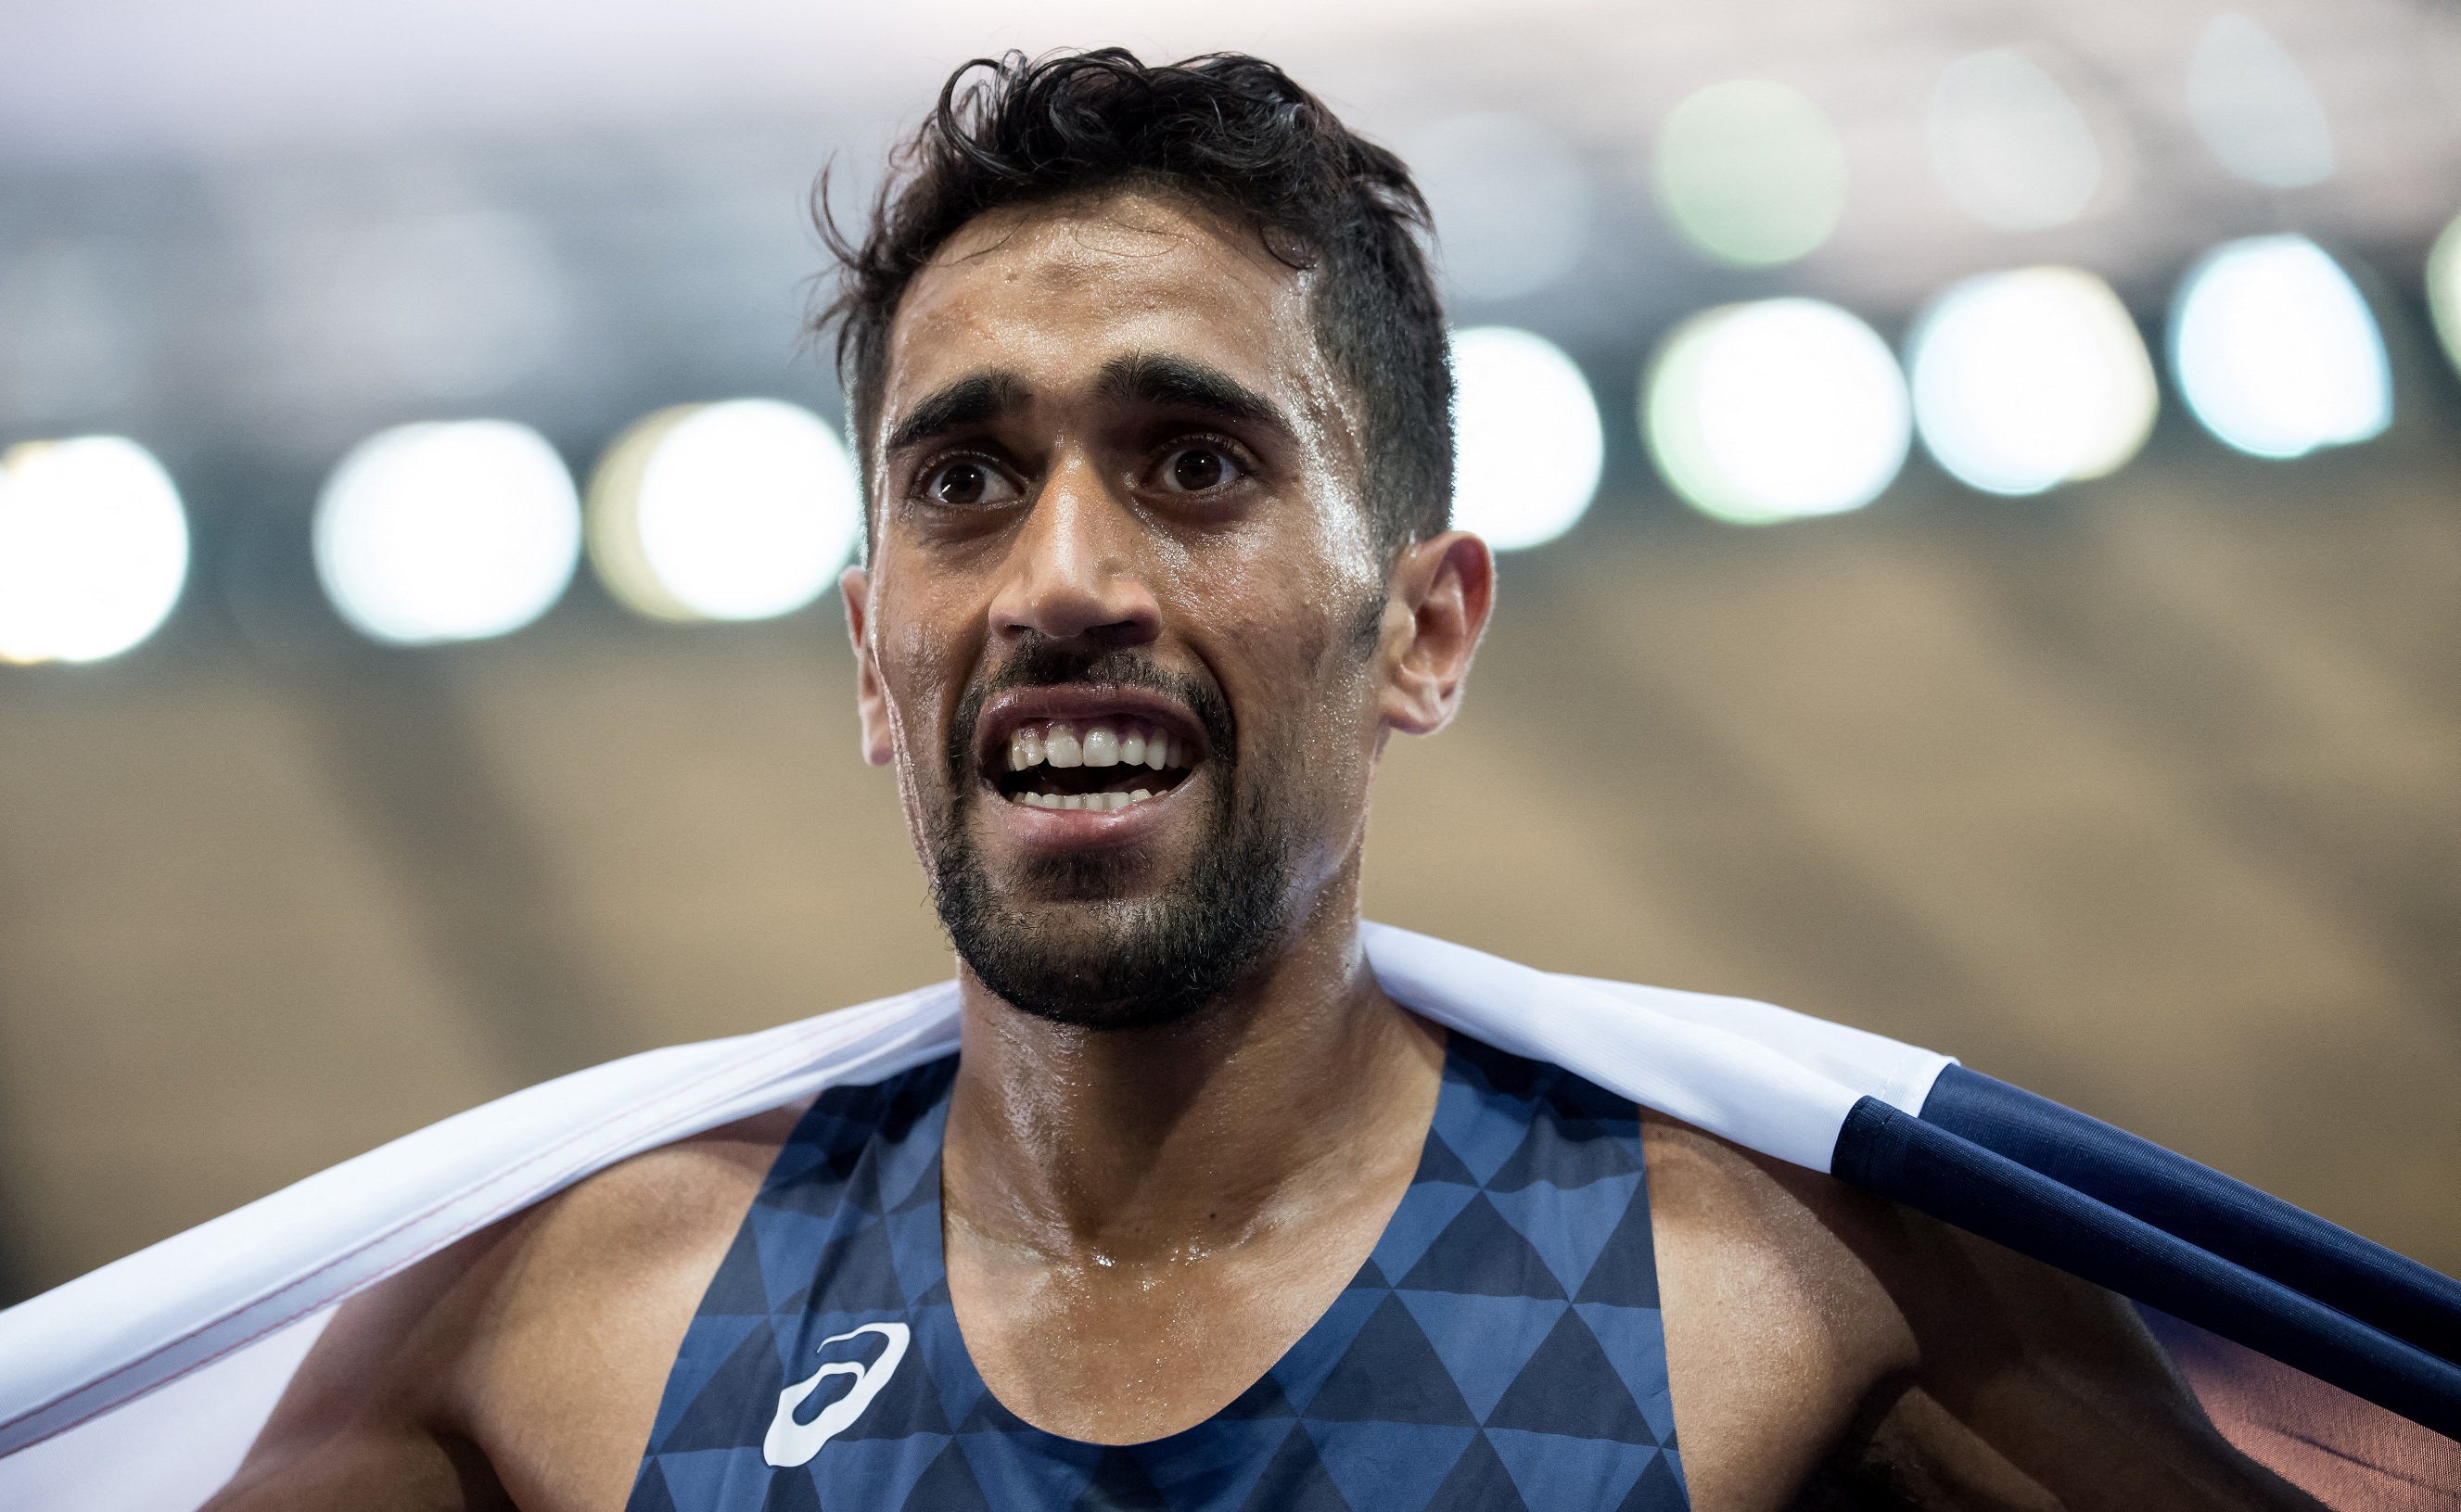 Morhad Amdouni a 2018-as atlétikai Eb-n Berlinben a 10 km-es szám győzteseként.